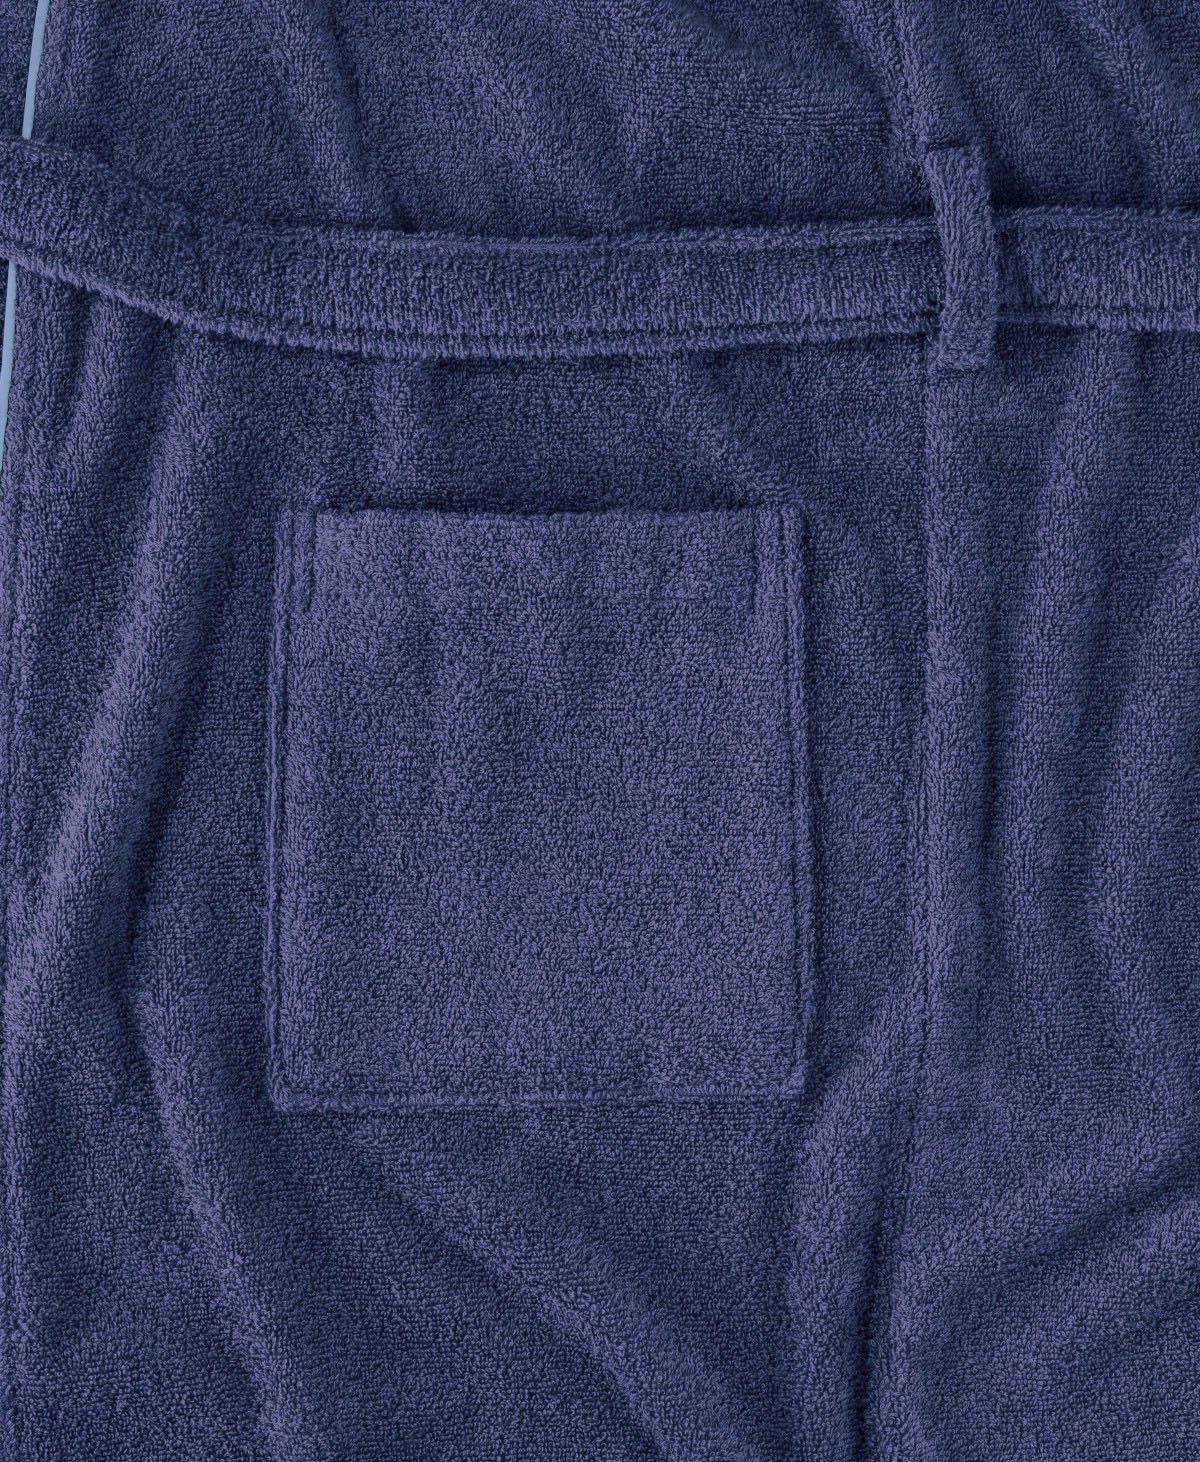 Logostickerei Baumwolle, blau Gürtel, der Herren, Kimono-Kragen, Bademantel für Brust und Damen Venice Chiemsee auf Bademantel Langform, Chiemsee